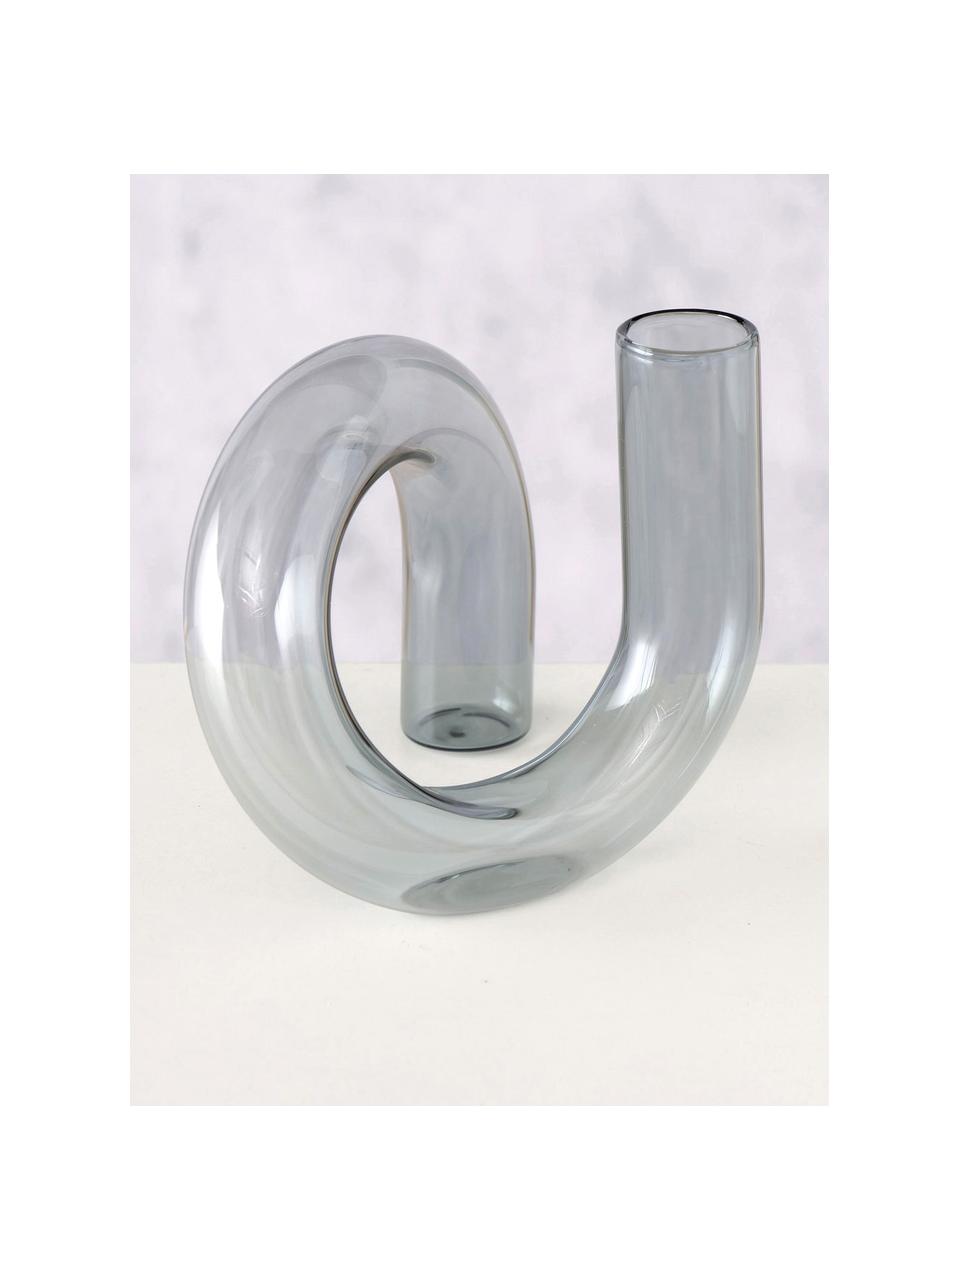 Design glazen vaas Circlein in grijs, Glas, Grijs, B 16 cm x H 14 cm